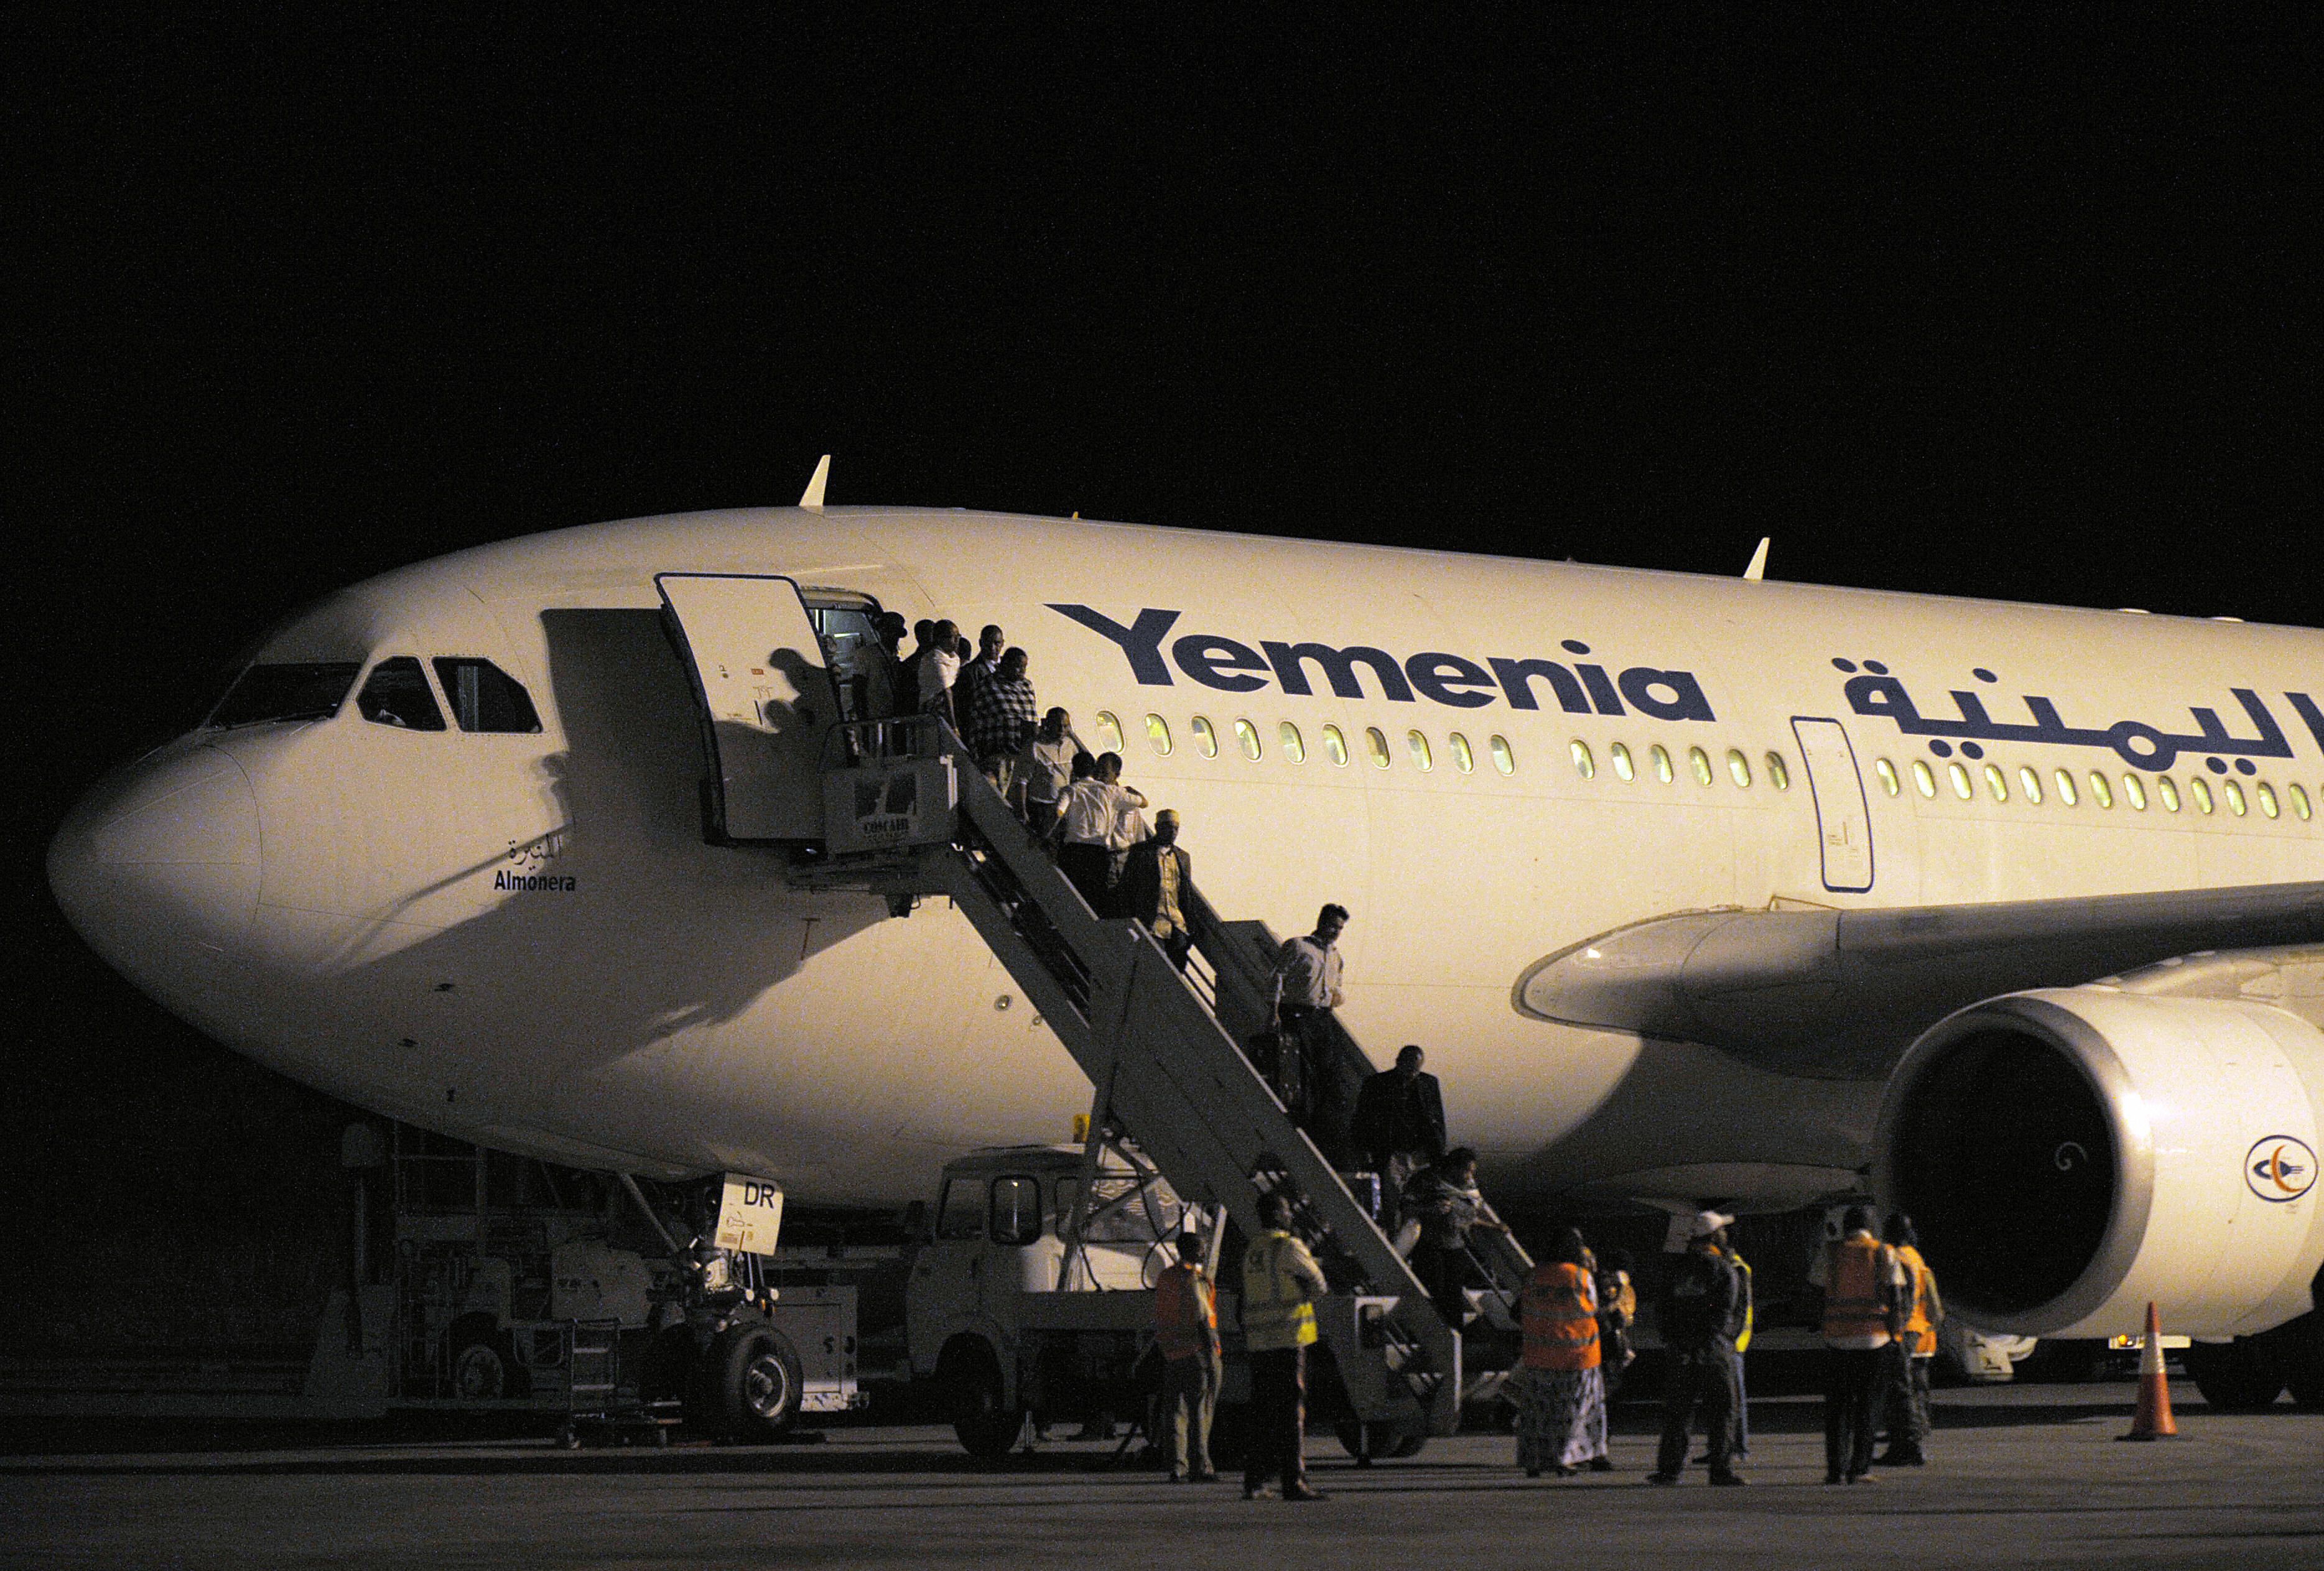 Yemnenia A310